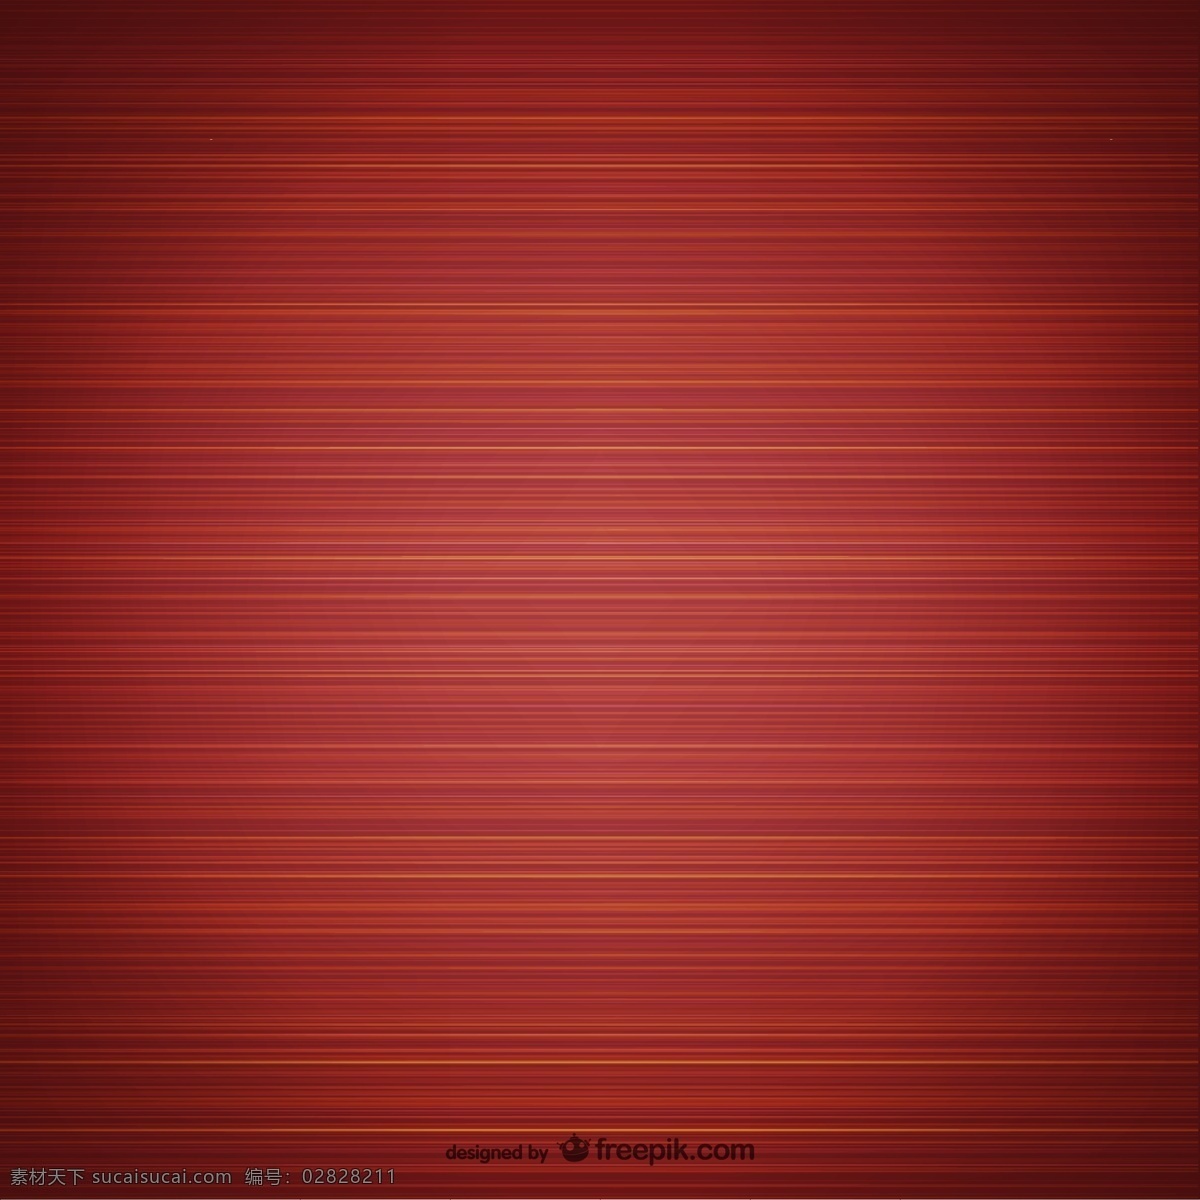 红 棕色 细 纹 背景 矢量 条纹 红棕色 矢量图 创意设计